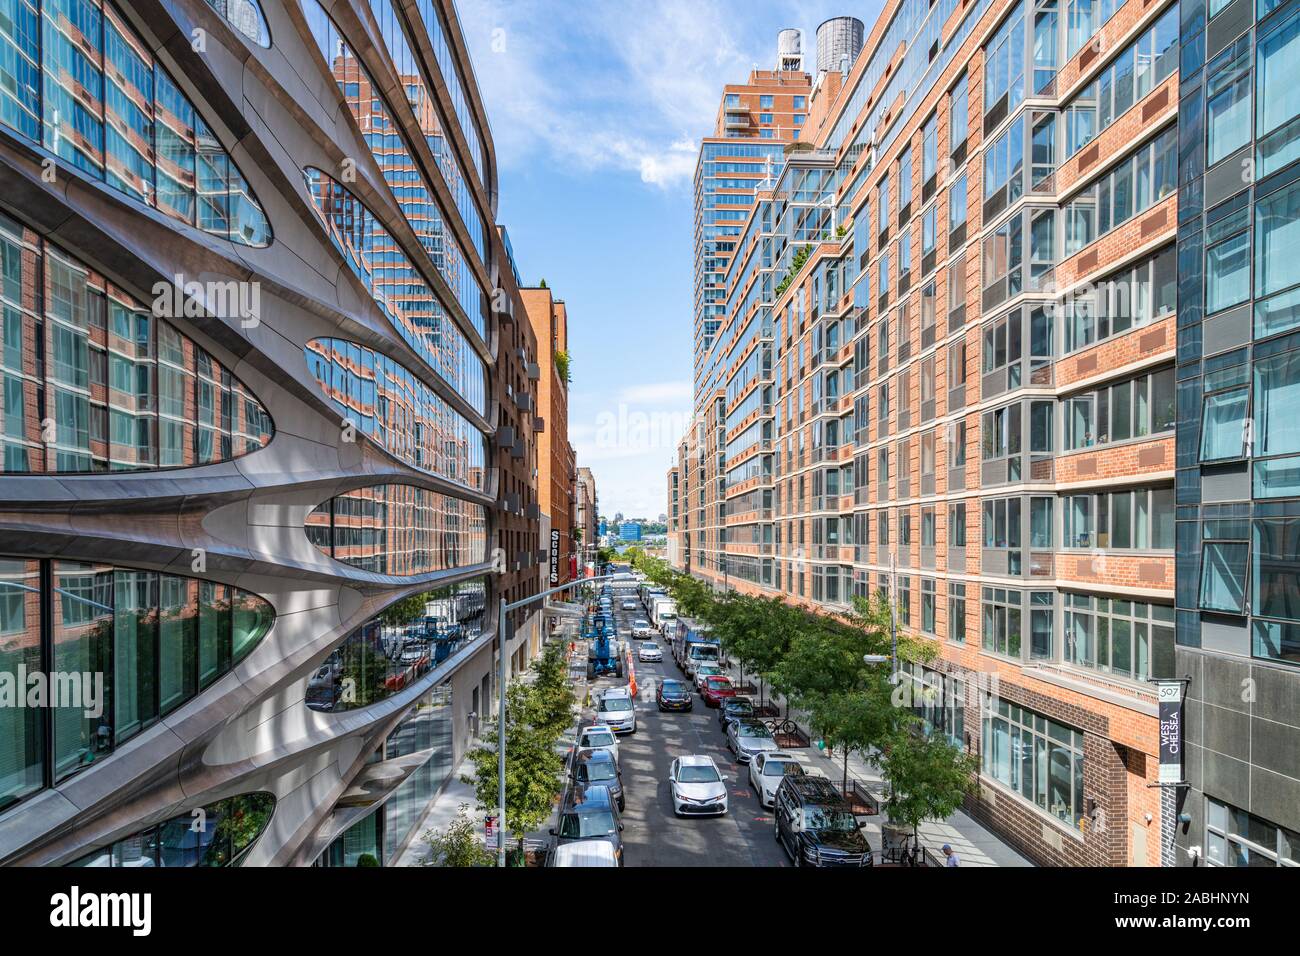 Image en couleur vue depuis le parc High Line dans une rue avec des voitures et des appartements design Zaha Hadid new york Manhattan Banque D'Images